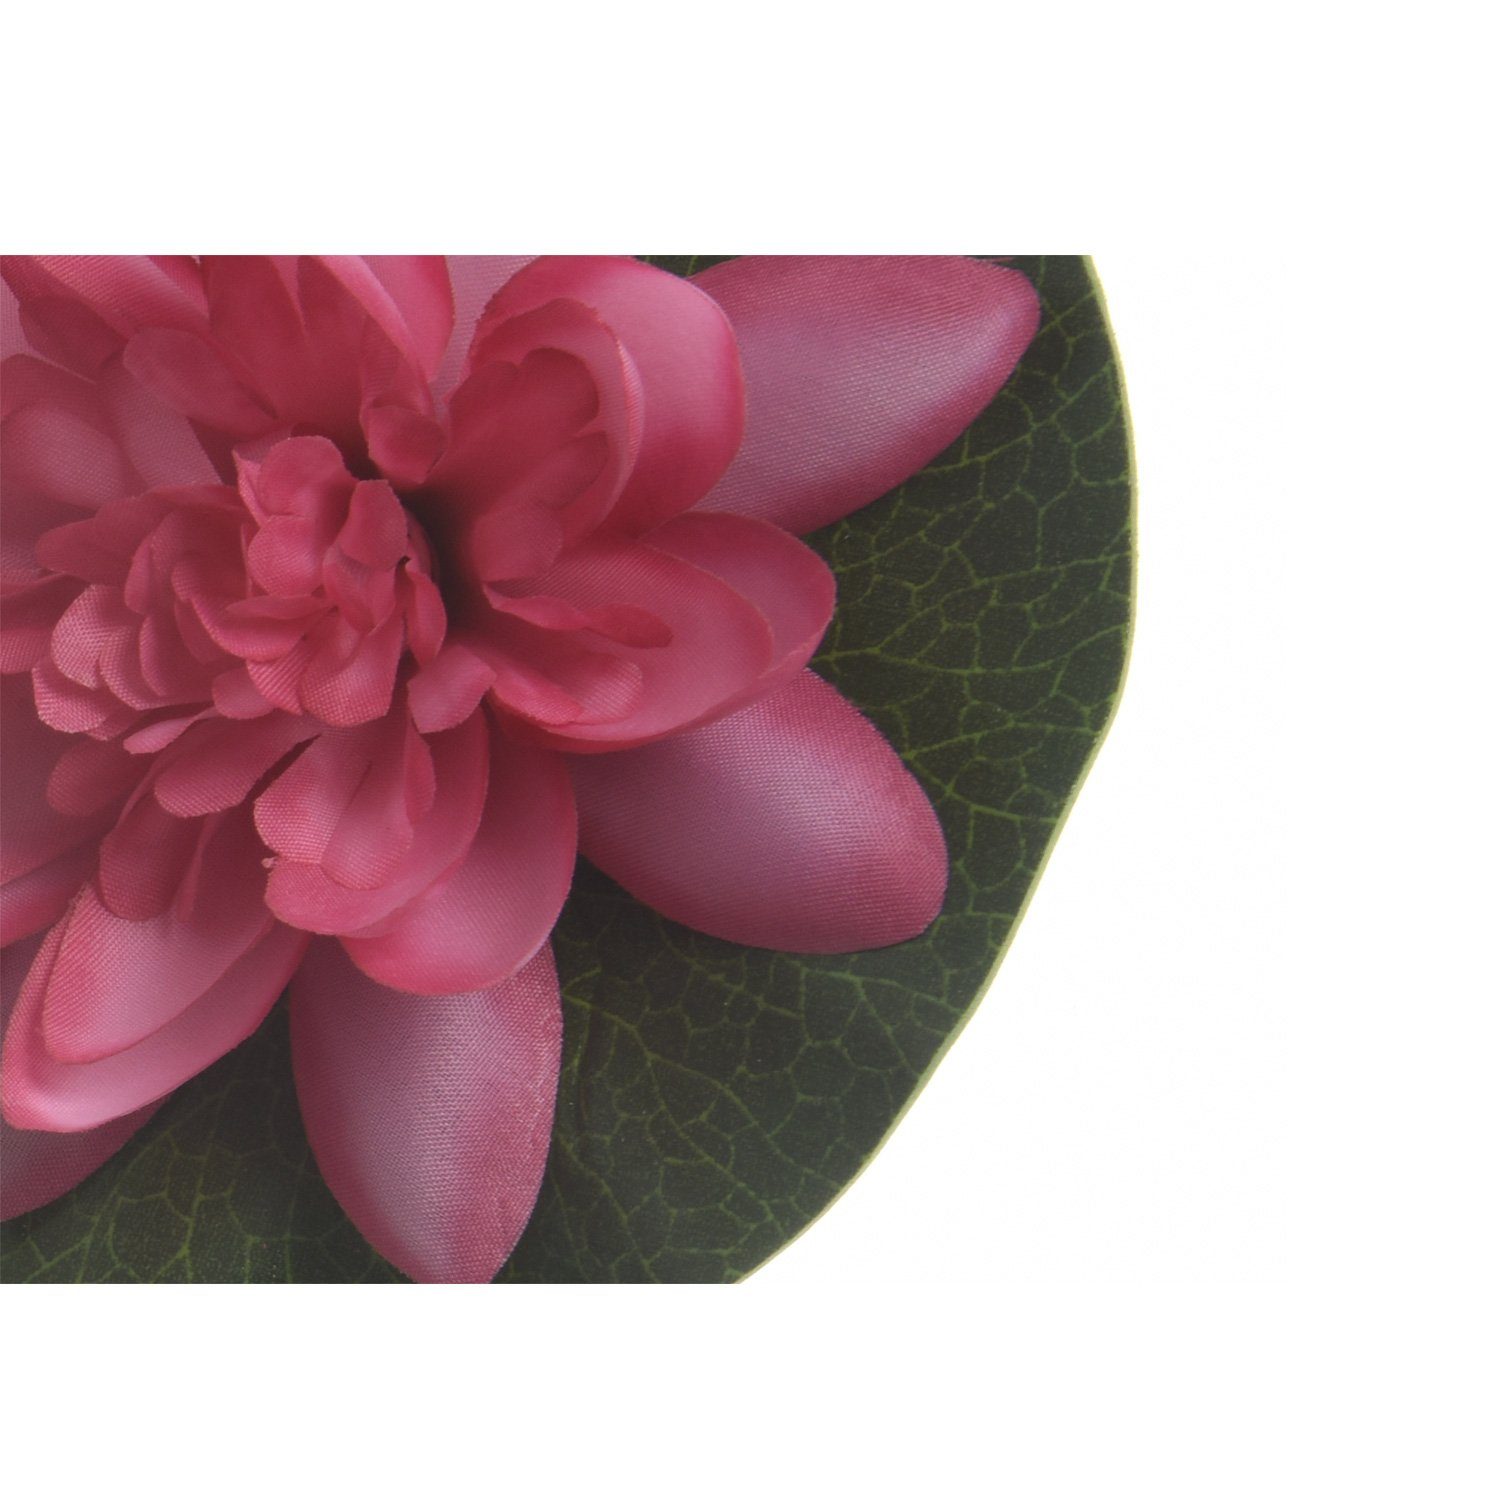 Lotusblüte Teichblume Seerose 4 Höhe Kunstblume Lotusblume 13cm cm Kunstblume D: schwimmend, MARELIDA,